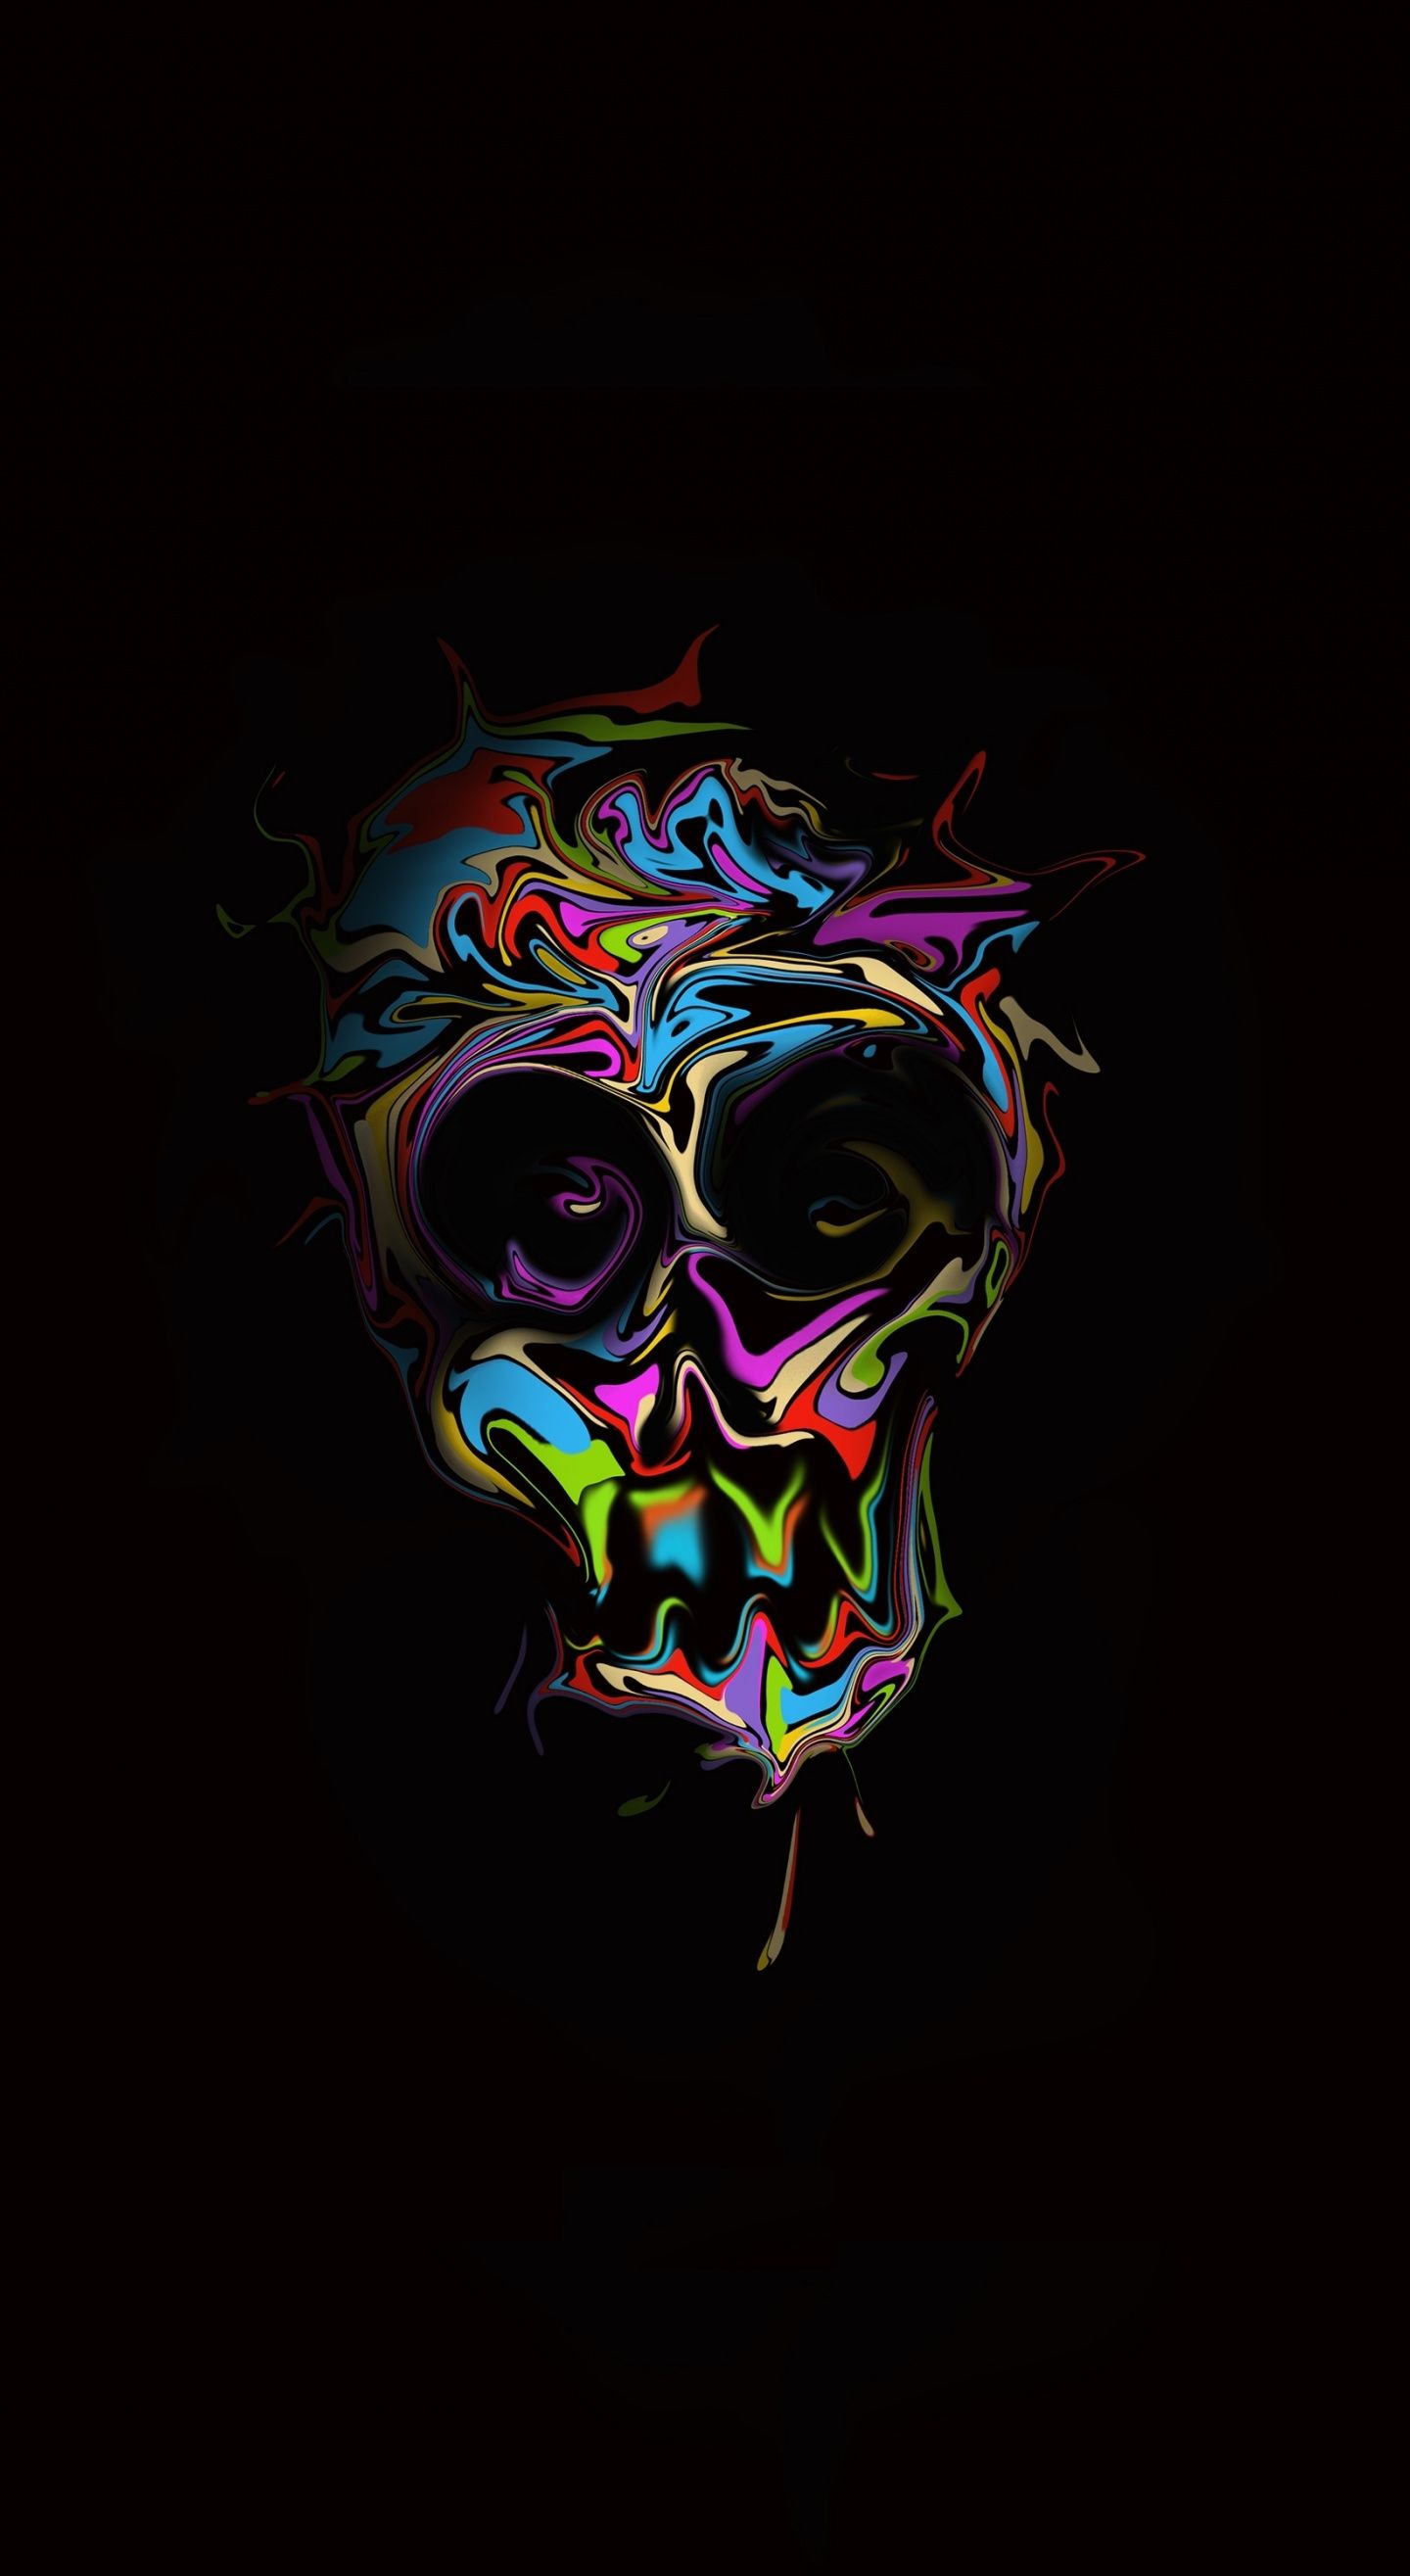 Glitch, colorful skull, dark, artwork wallpaper. Skull artwork, Skull wallpaper, Nature iphone wallpaper